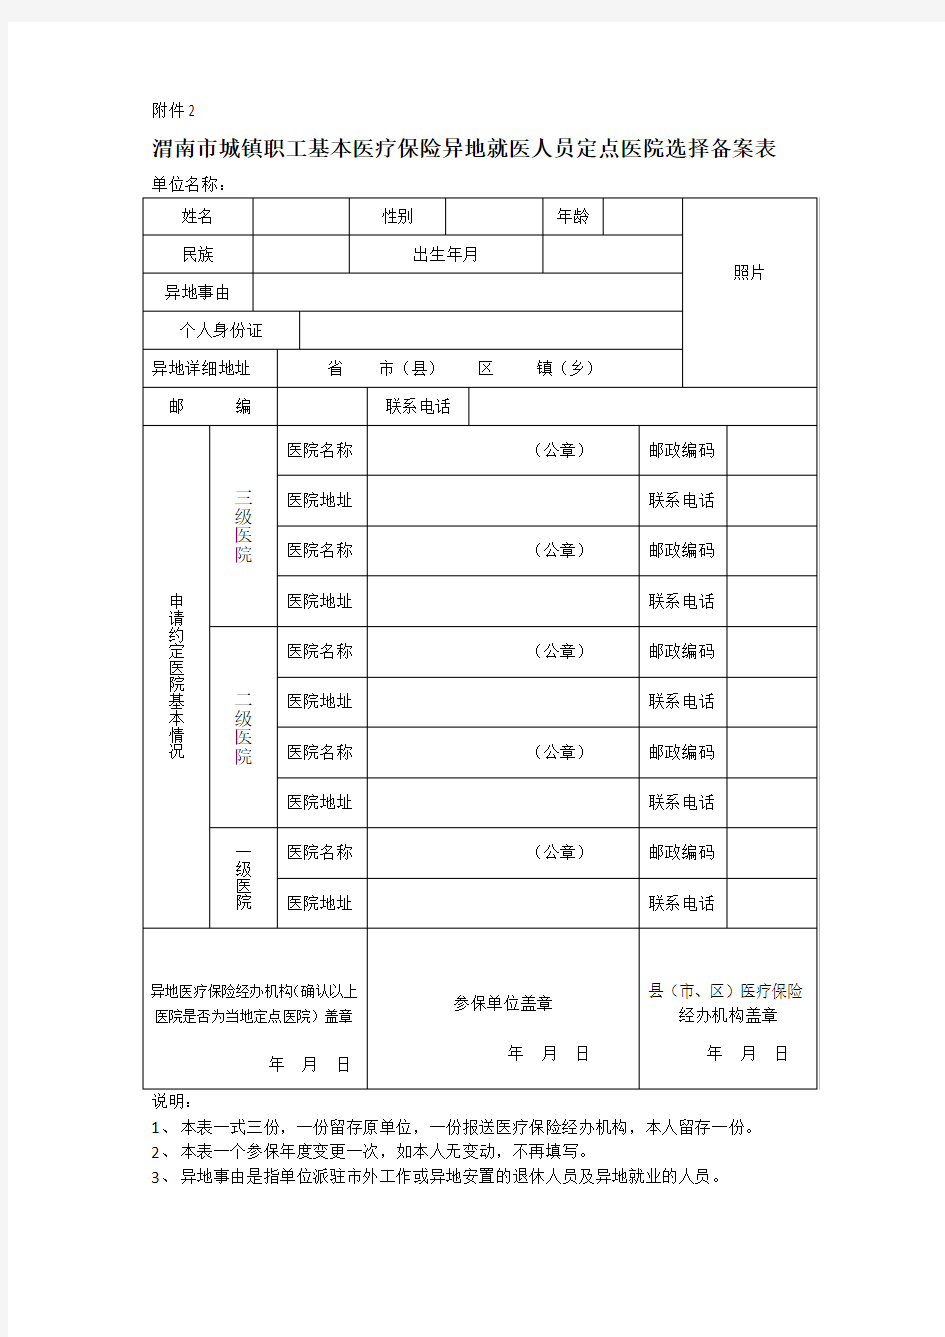 [最新版]渭南市城镇职工基本医疗保险异地就医人员定点医院选择备案表